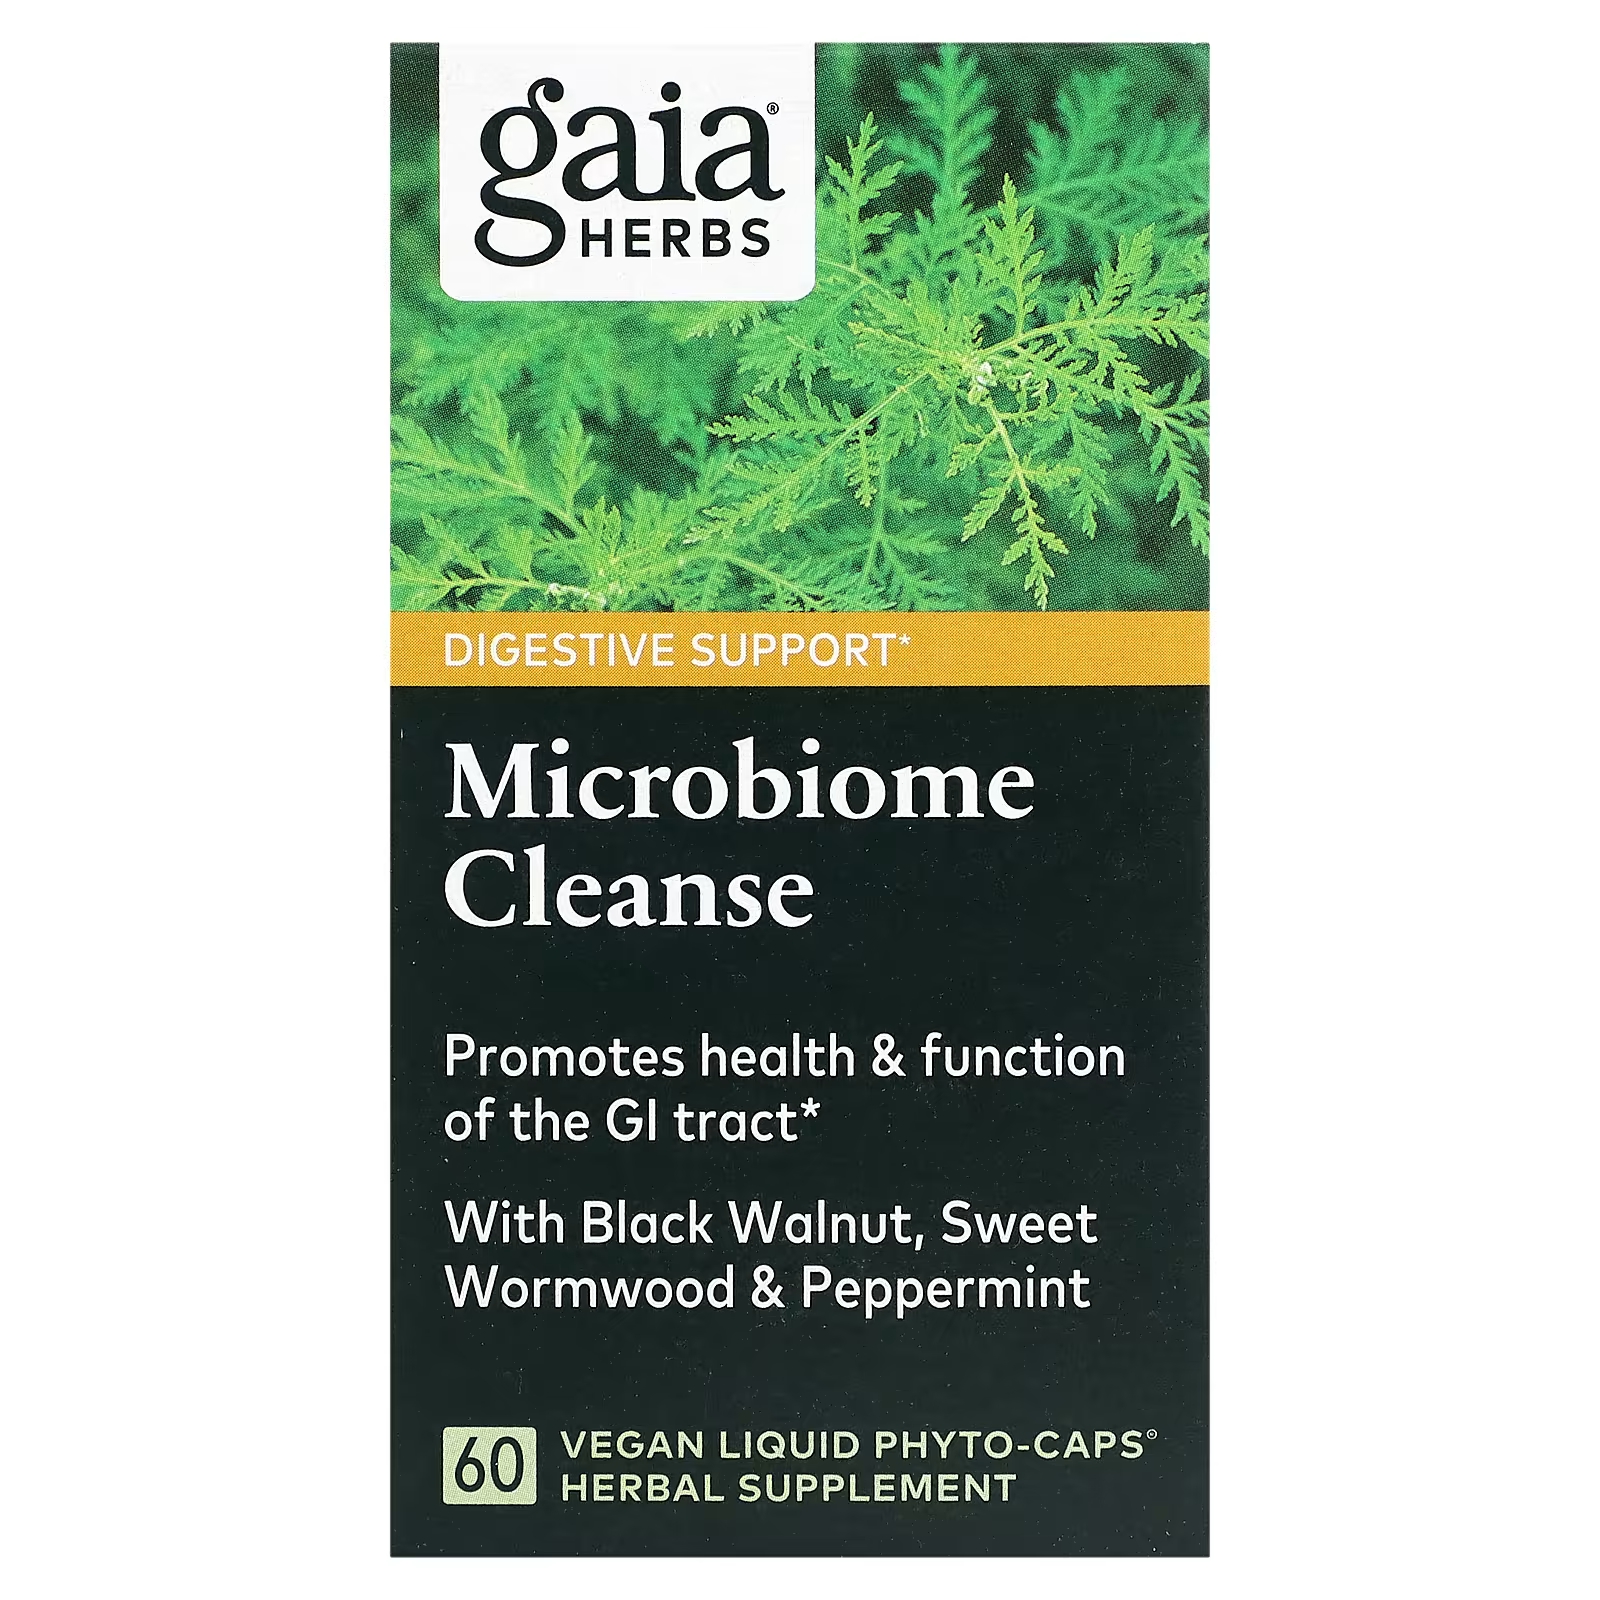 Растительная добавка Gaia Herbs Microbiome Cleanse, 60 жидких фитокапсул лечение черным тмином луком верблюжьим сеном чесноком перечной мятой медом финиками